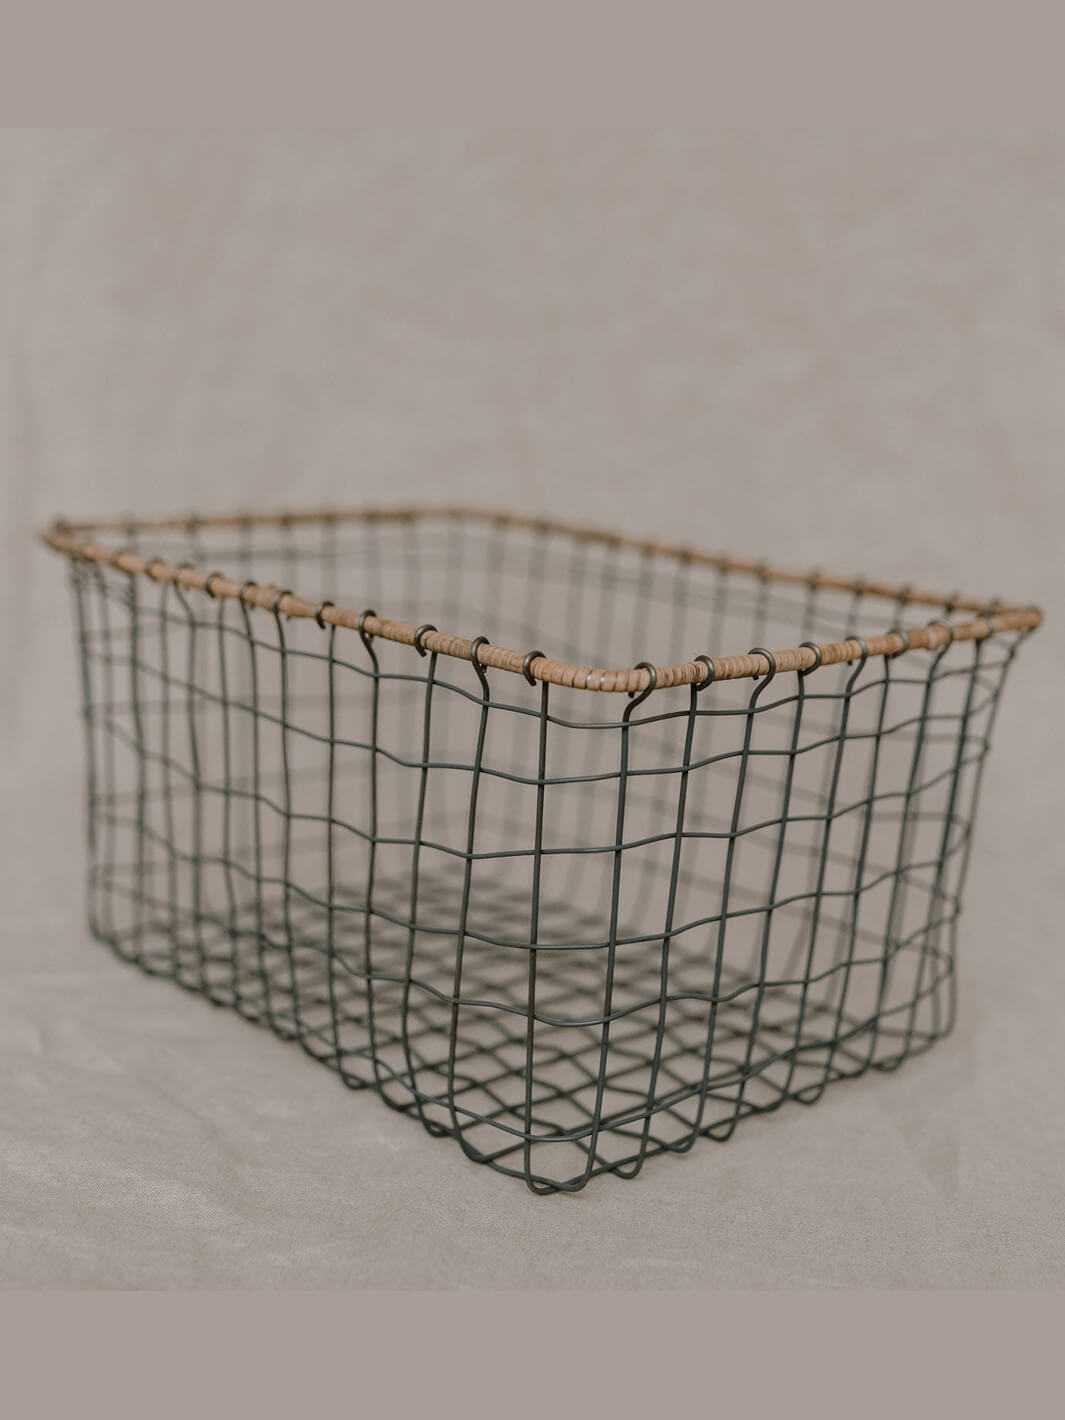 Handmade wire basket